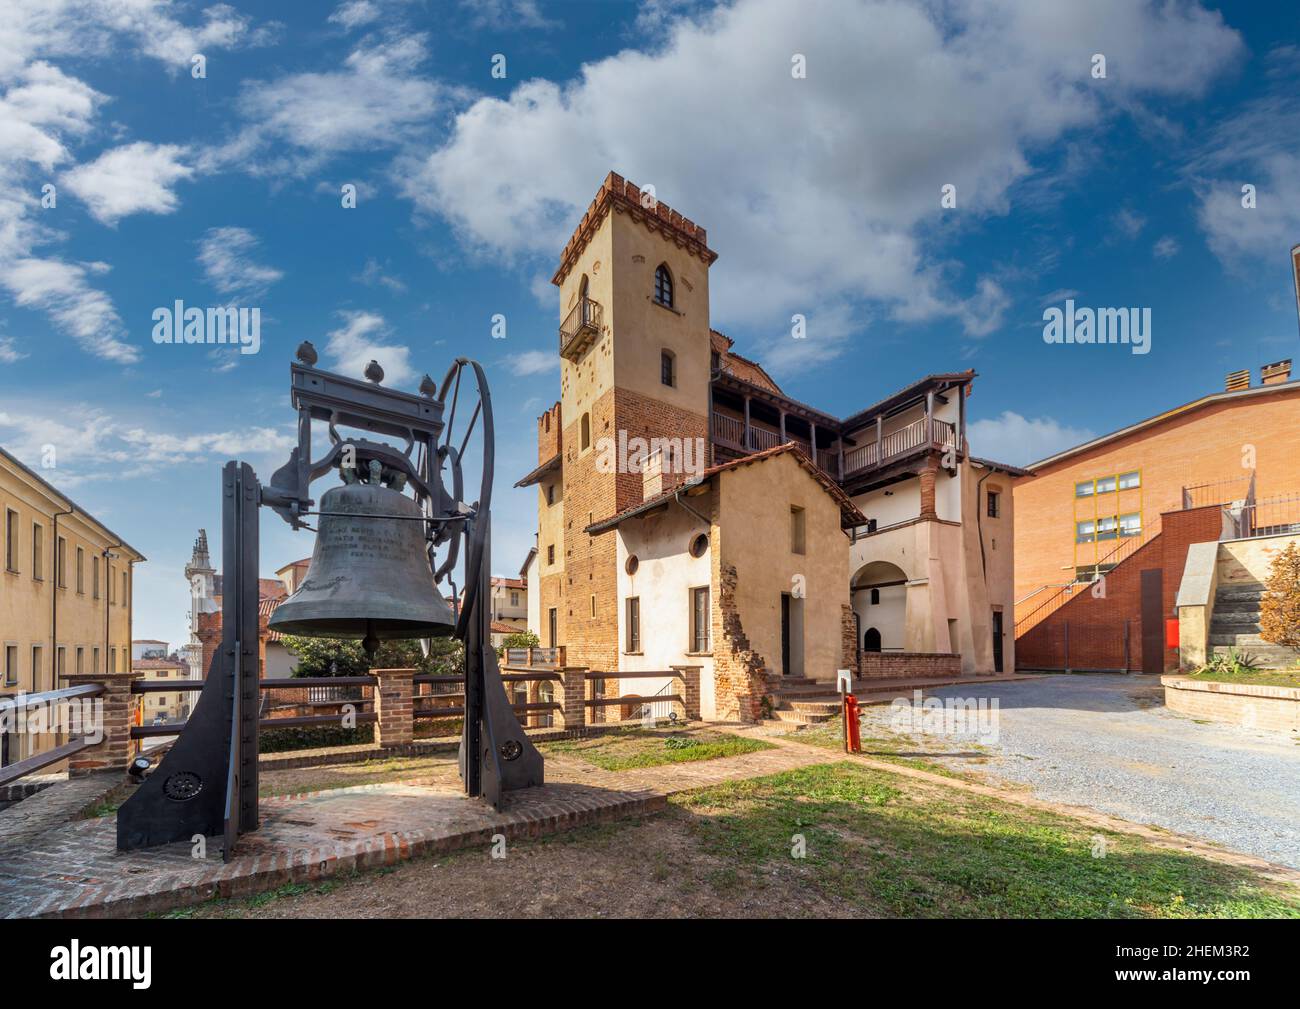 BRA, Cuneo, Piémont, Italie - 28 octobre 2021 : PalazzoTraversa, la cour avec la cloche, Musée d'archéologie, Histoire de l'Art Banque D'Images